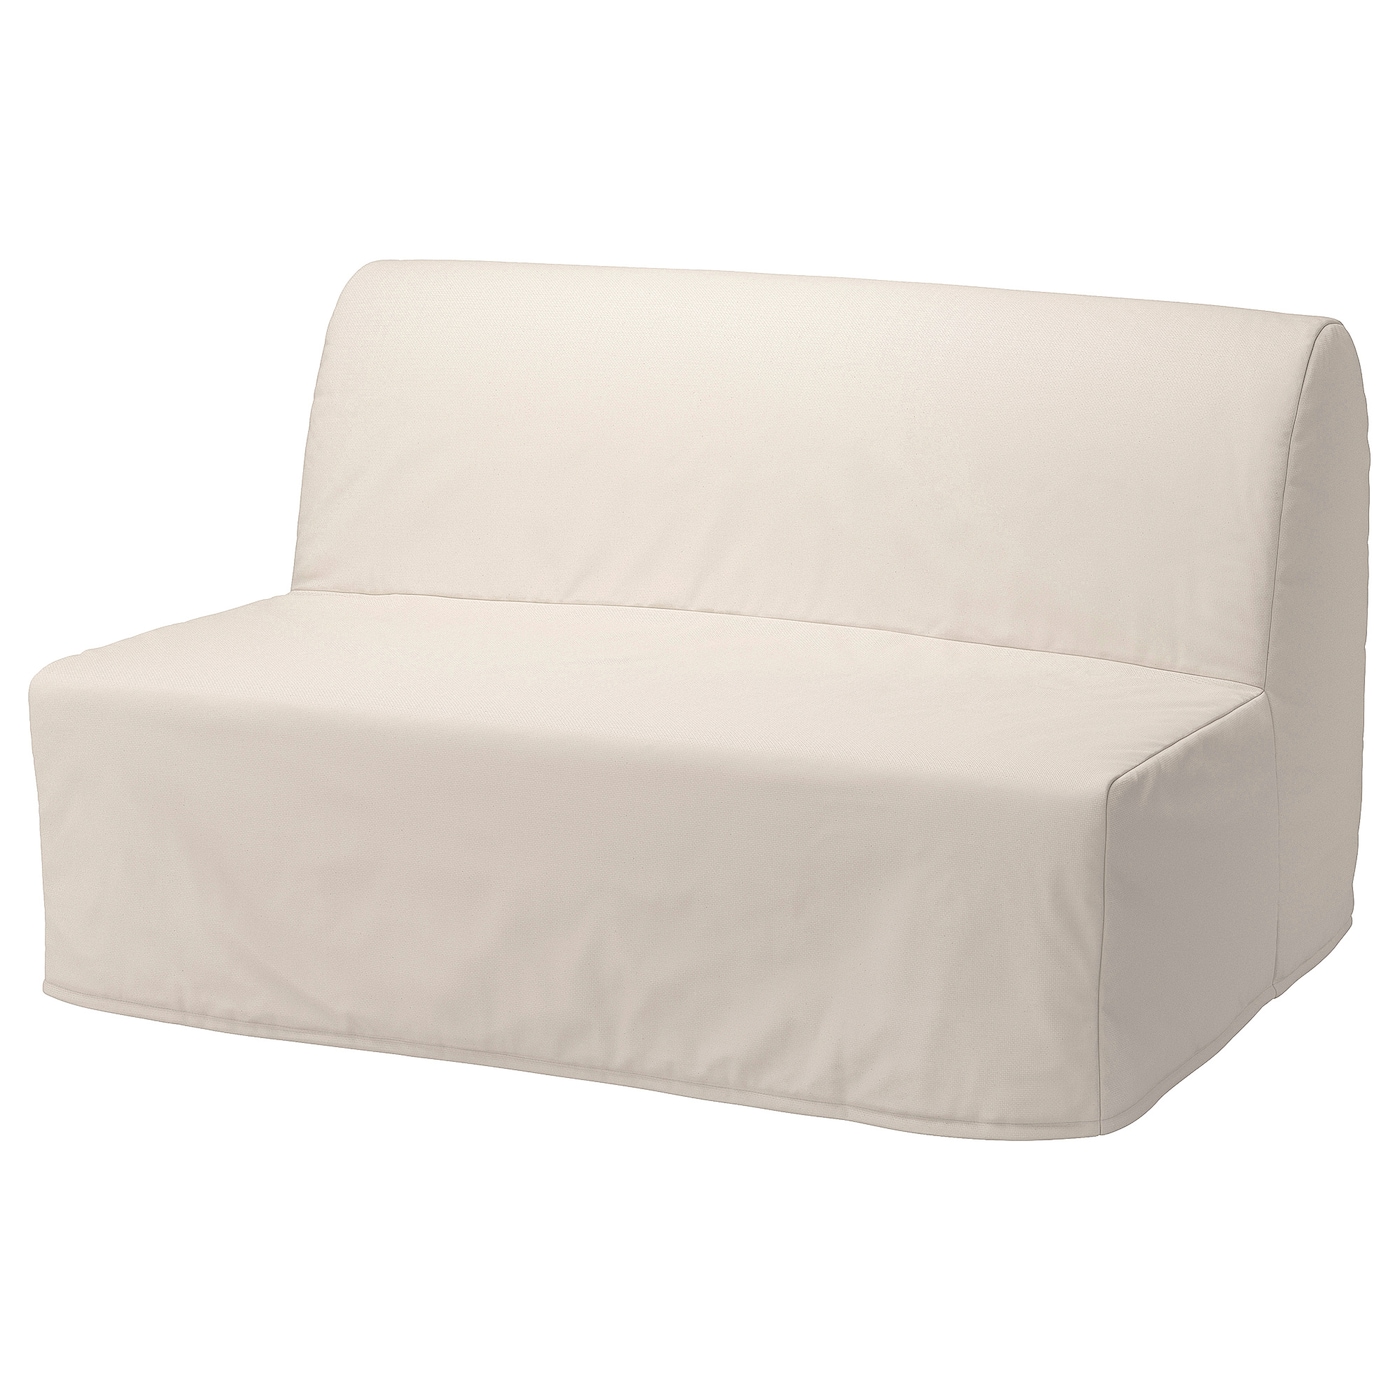 ЛИКСЕЛЕ ЛЕВОС 2 раскладных дивана-кровати, Ранста натуральный цвет LYCKSELE LÖVÅS IKEA матрас для дивана первый мебельный винсен 3